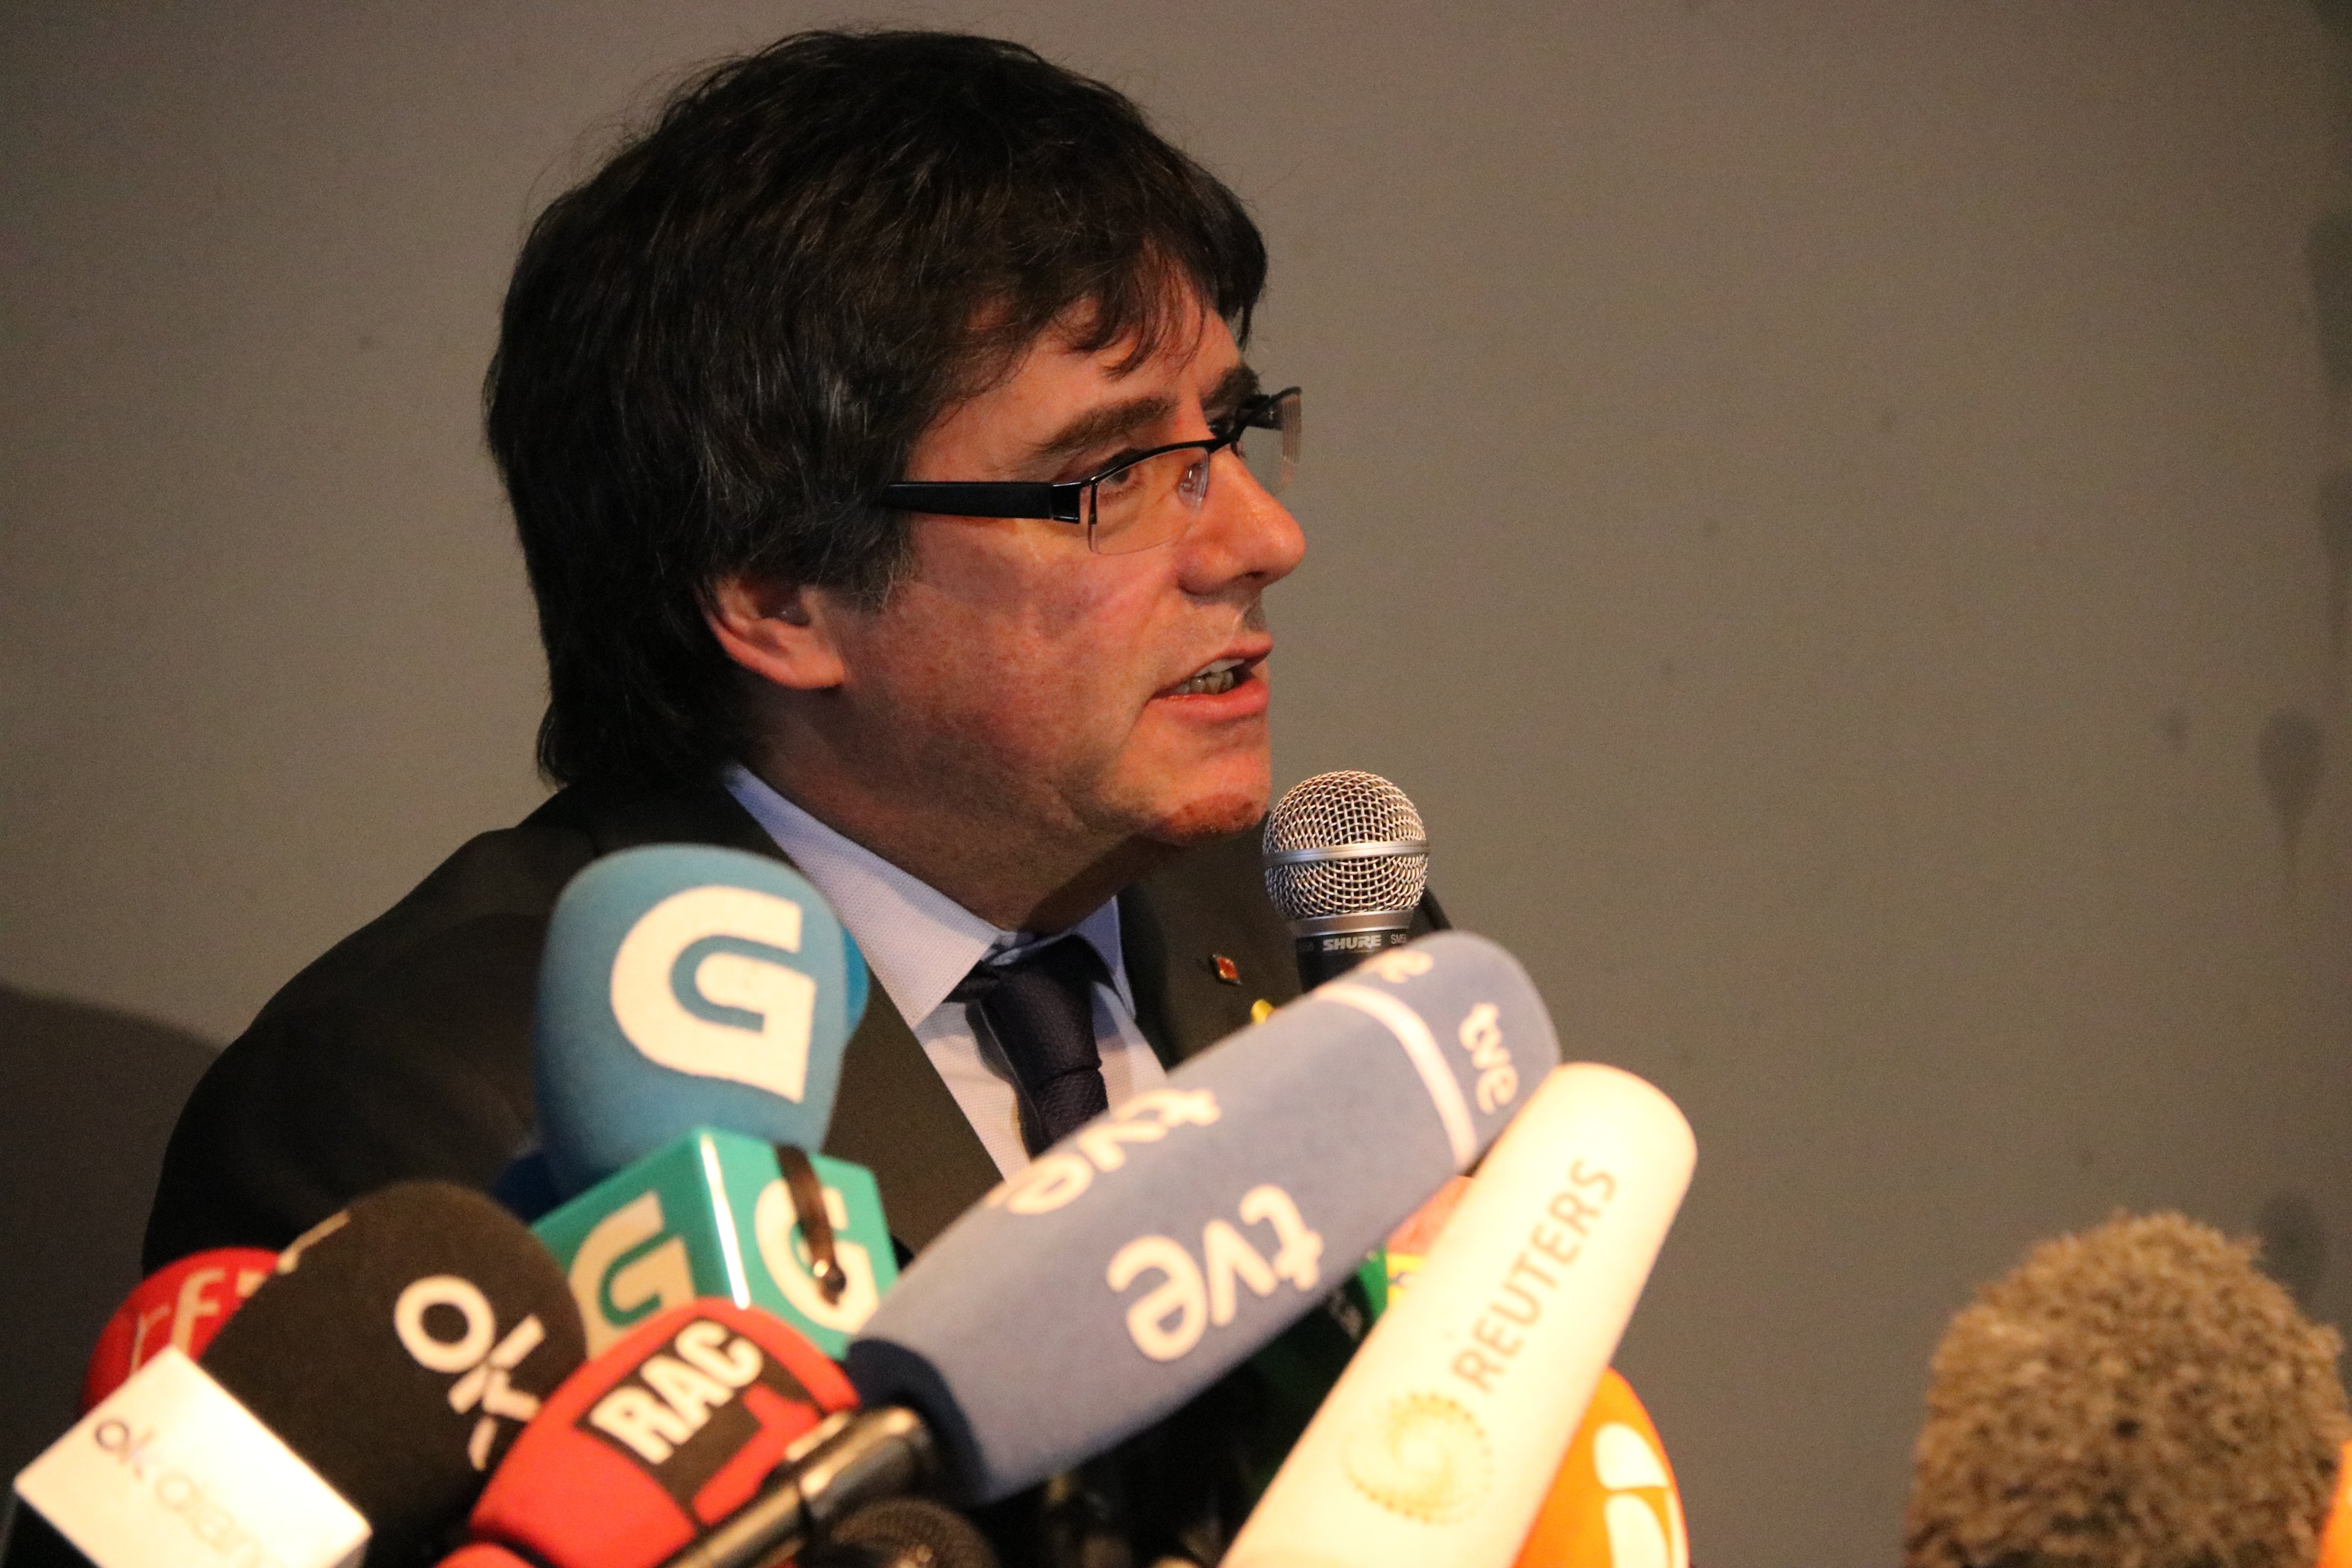 L'emotiu agraïment de Puigdemont als catalans que li han fet costat a Alemanya